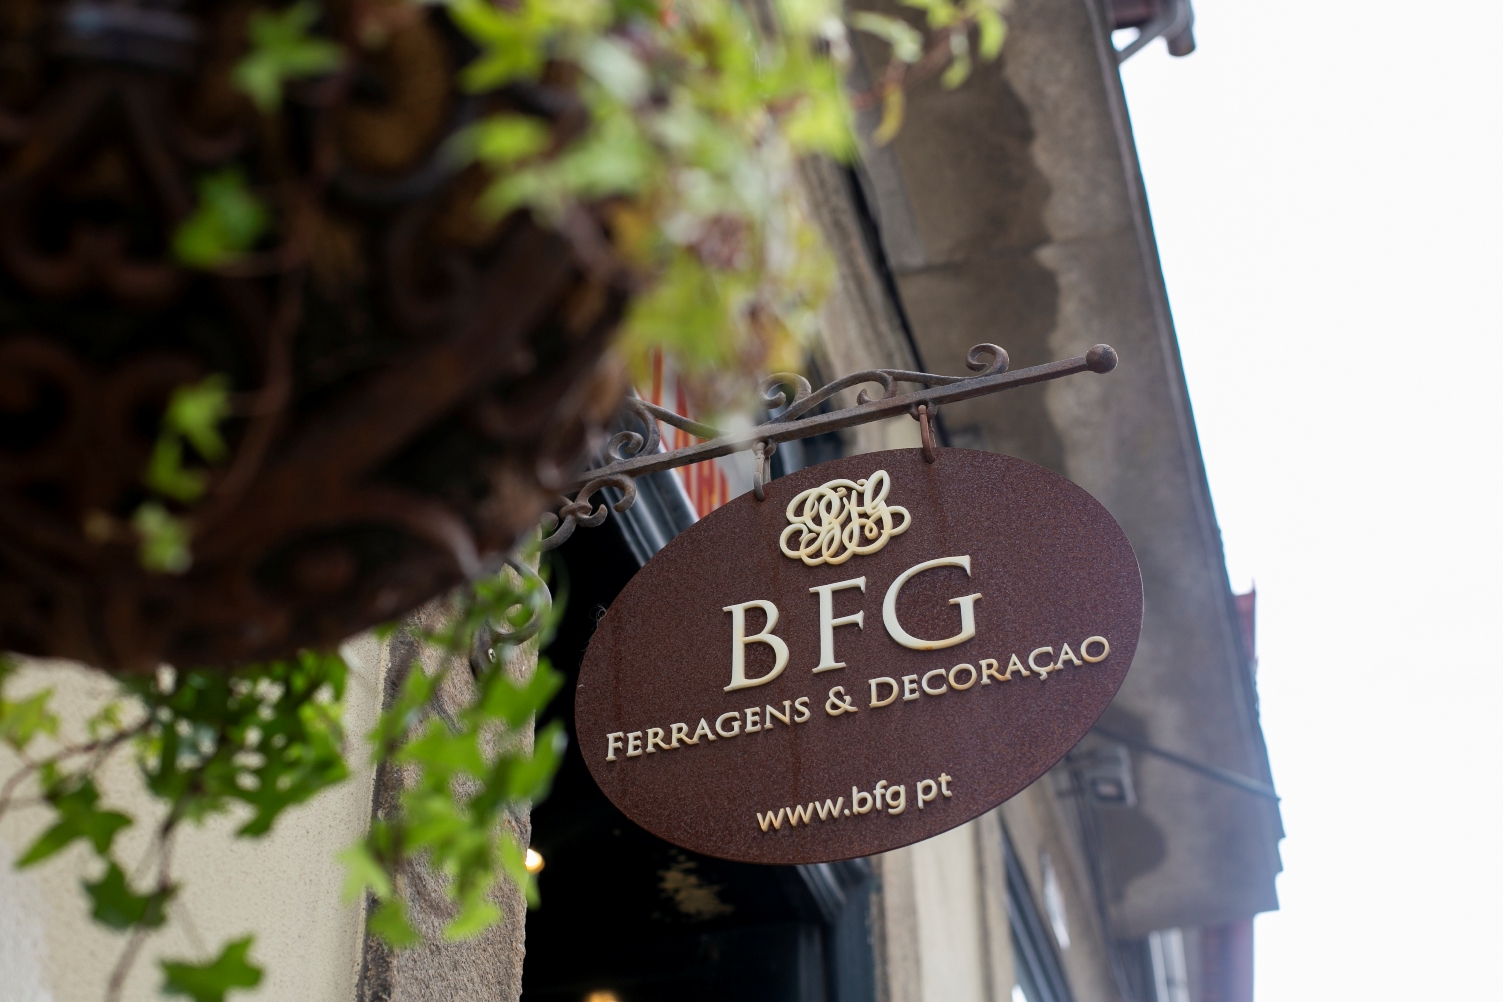 BFG - Ferragens & Decoração - Shops